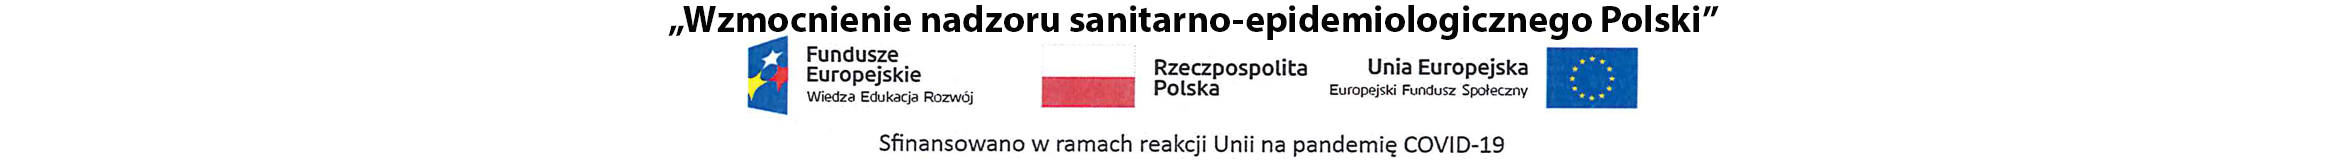 Z prawej strony banera umiejscowione są logotypy: Fundusze Europejskie, Rzeczpospolita Polska i Unia Europejska. Na dole widnieje napis: Sfinansowano w ramach reakcji Unii na pandemię COVID-19. Z lewej strony banera umiejscowiony jest biały tekst na granatowym tle: Wzmocnienie państwowej inspekcji sanitarnej poprzez zakup innowacyjnego wyposażenia.